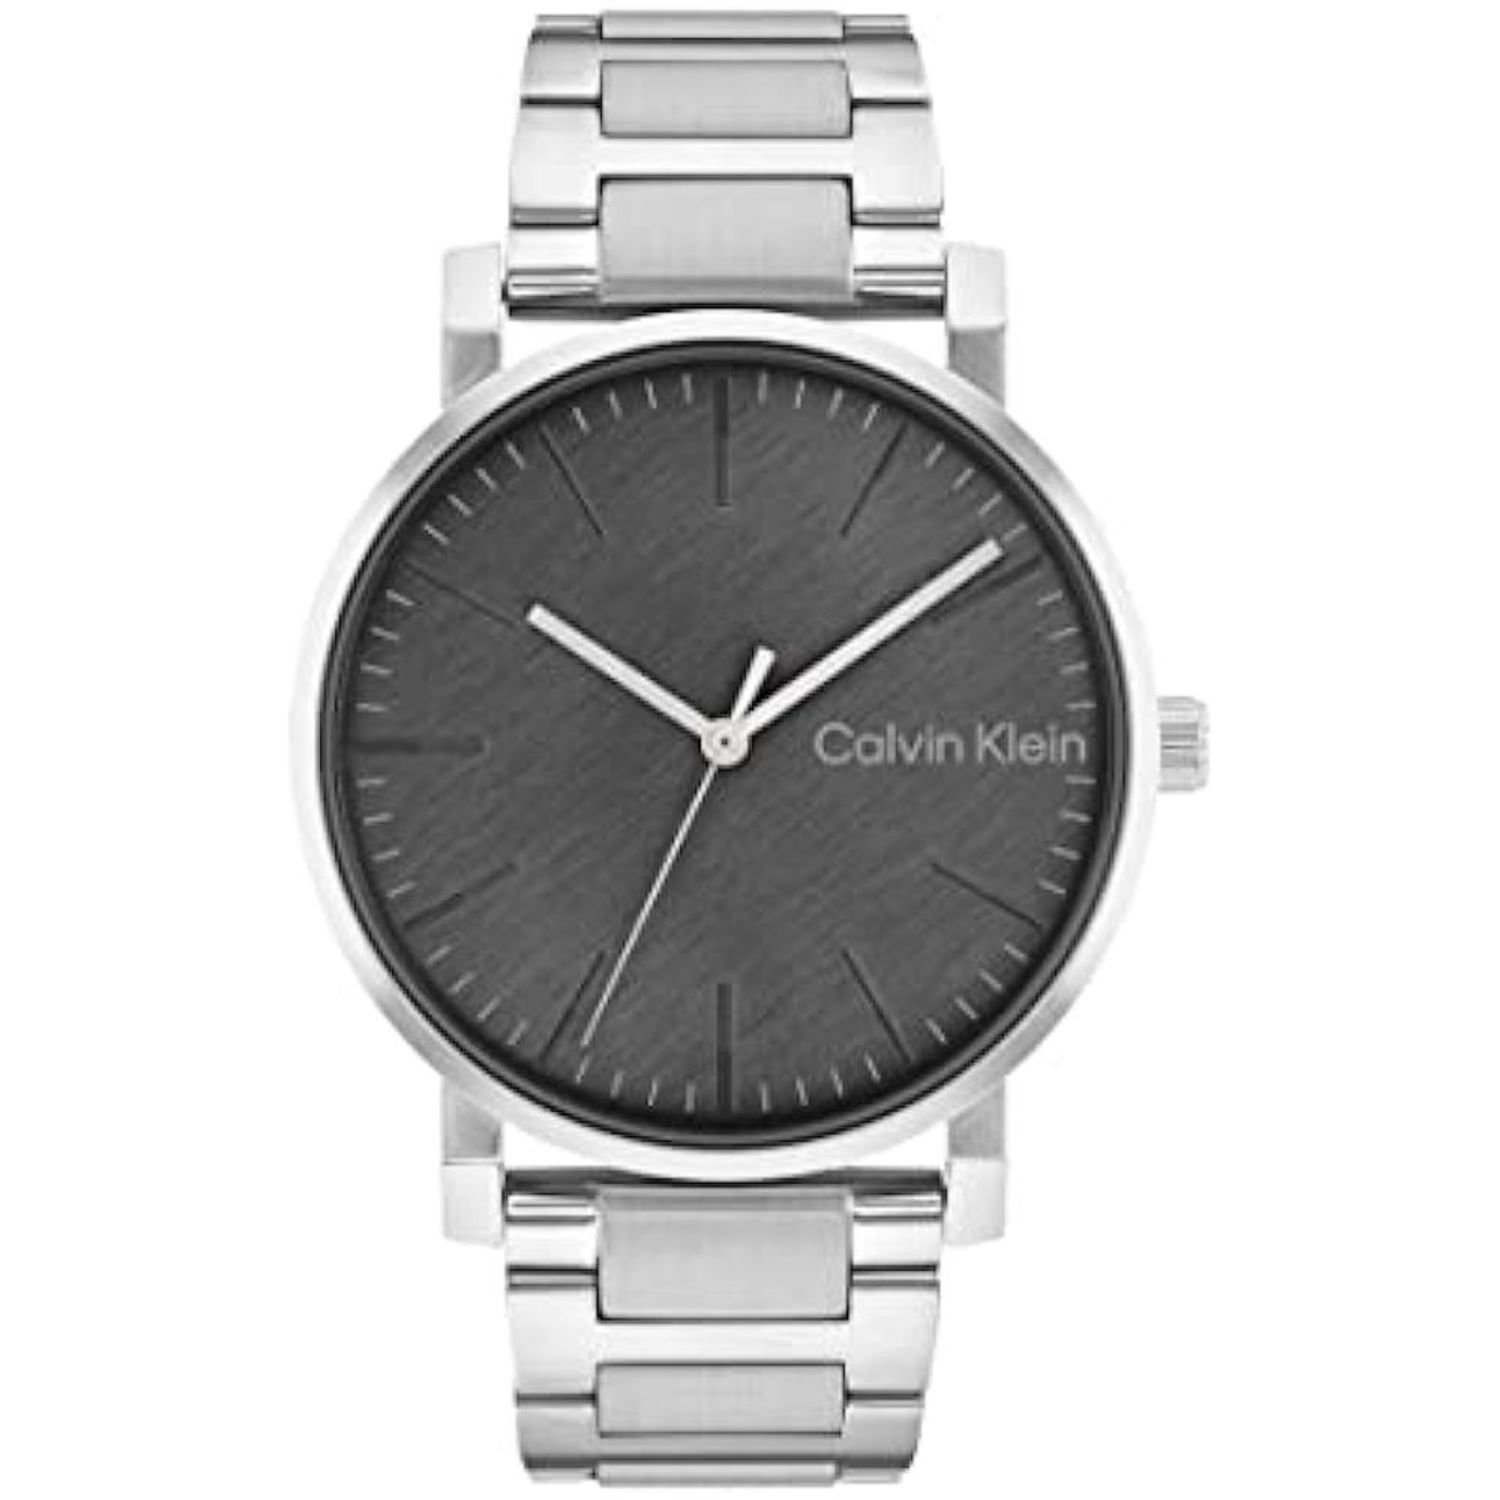 Intuición Ninguna Engañoso Reloj de Lujo Calvin Klein 25200256 para Hombre en Plateado I Oechsle -  Oechsle